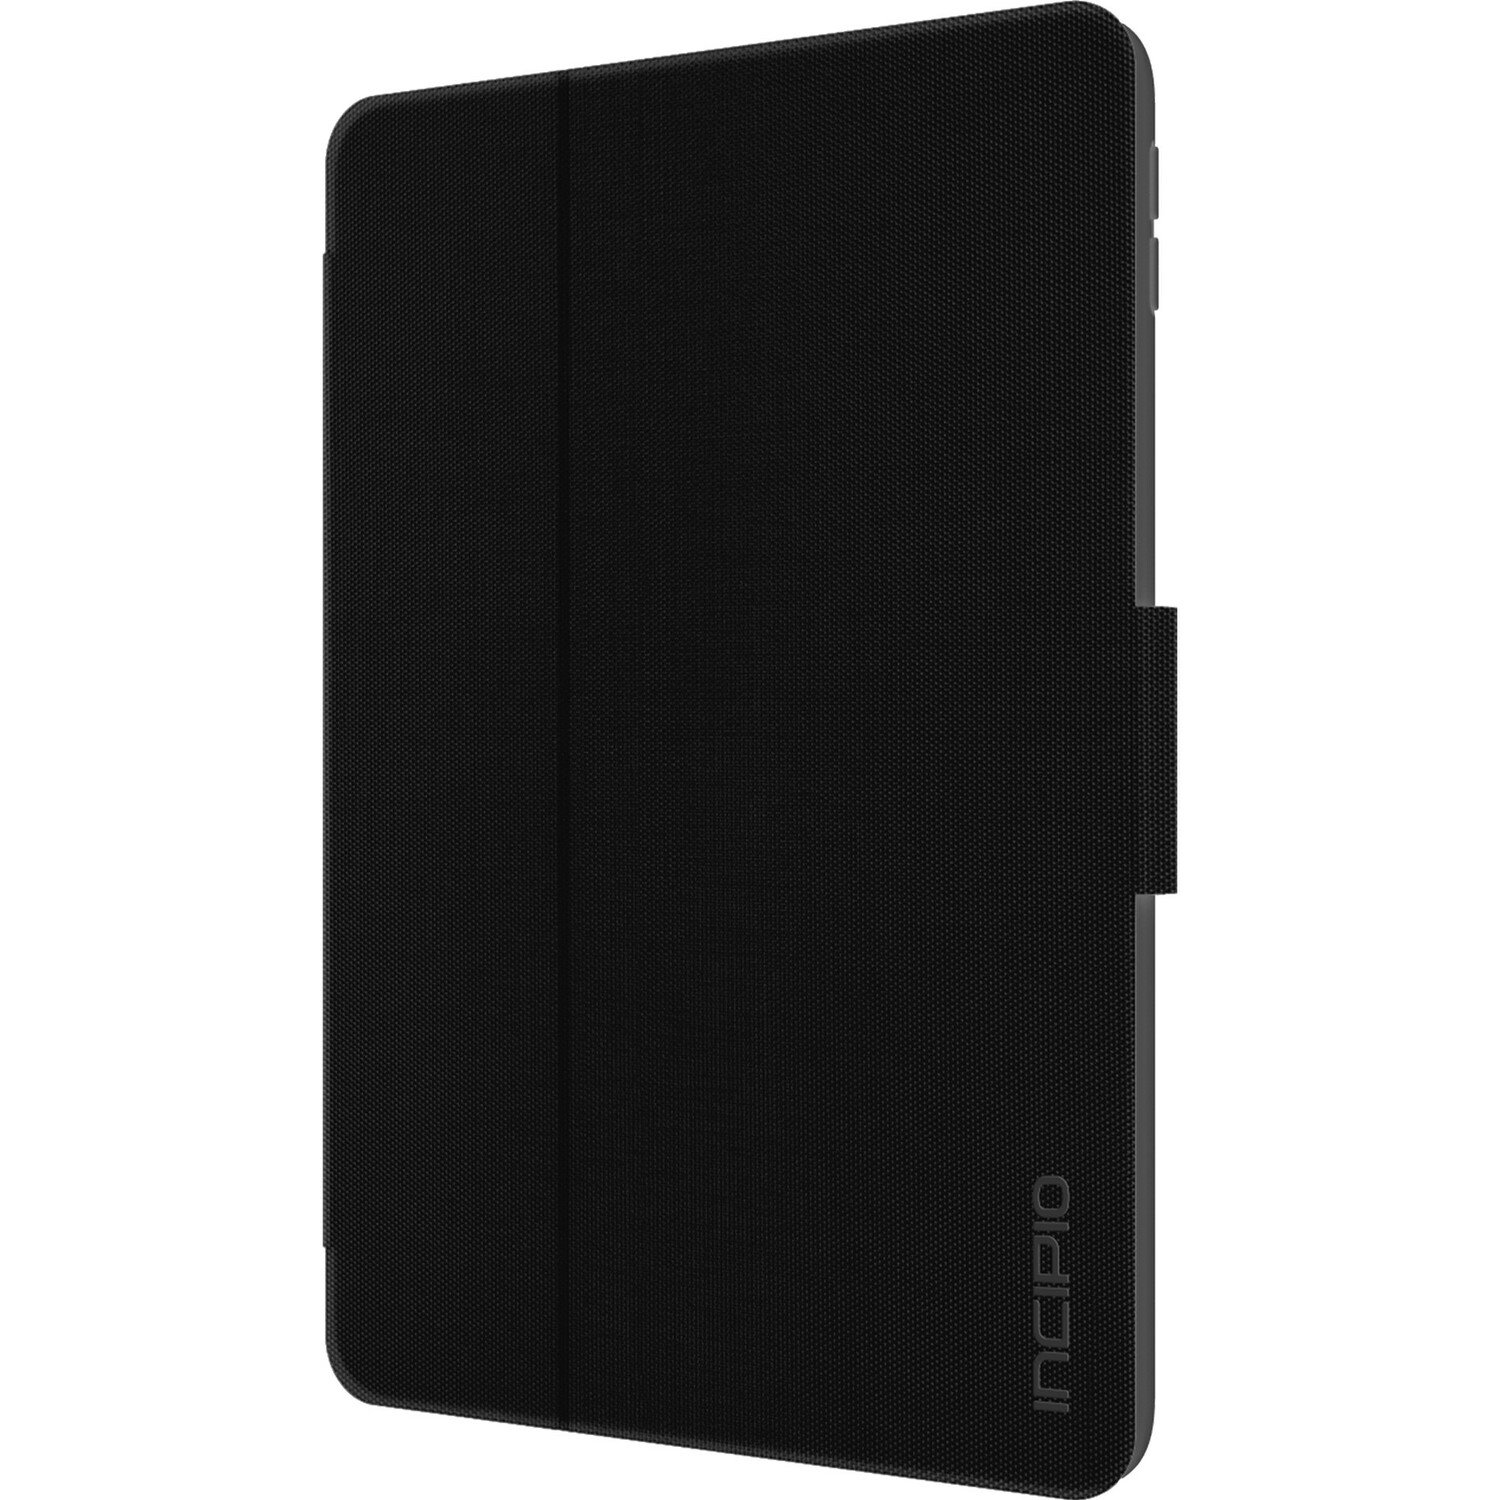 Incipio Clarion Carrying Case (Folio) for 9.7" Apple iPad (5th Generation) Tablet - Translucent, Black